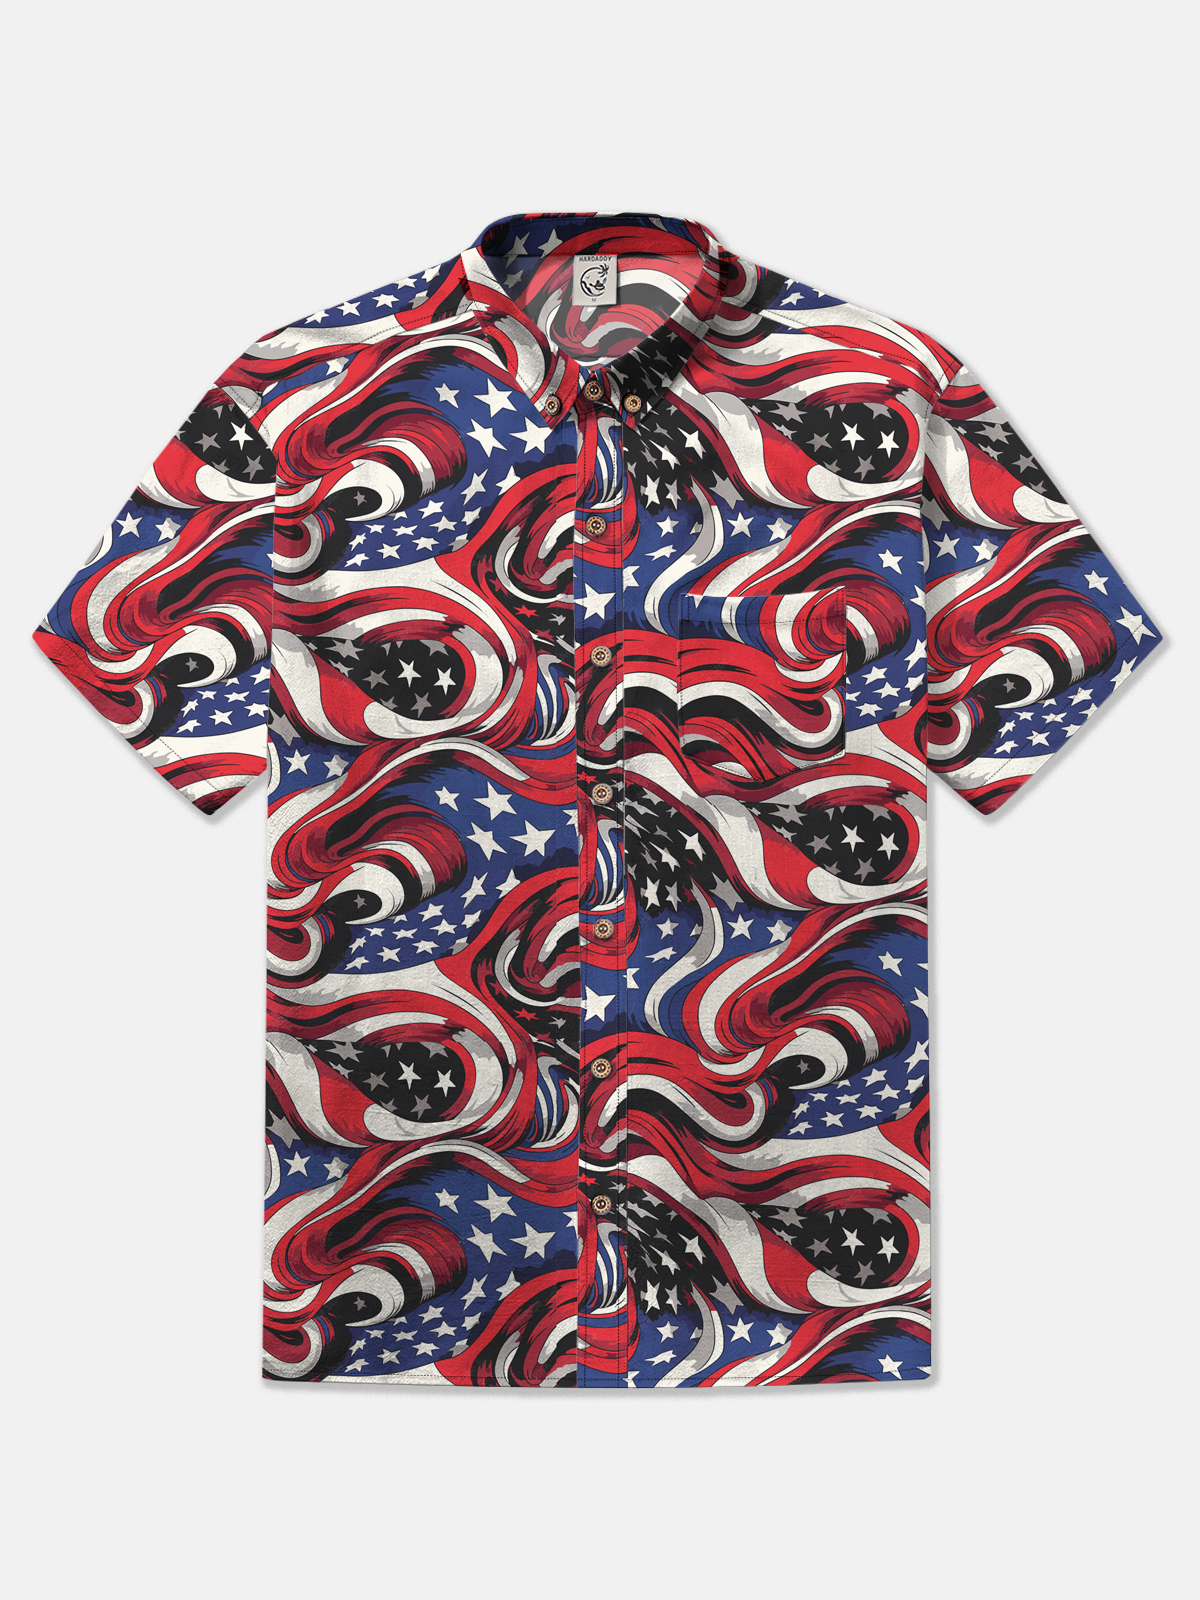 Hardaddy American Flag Shirt